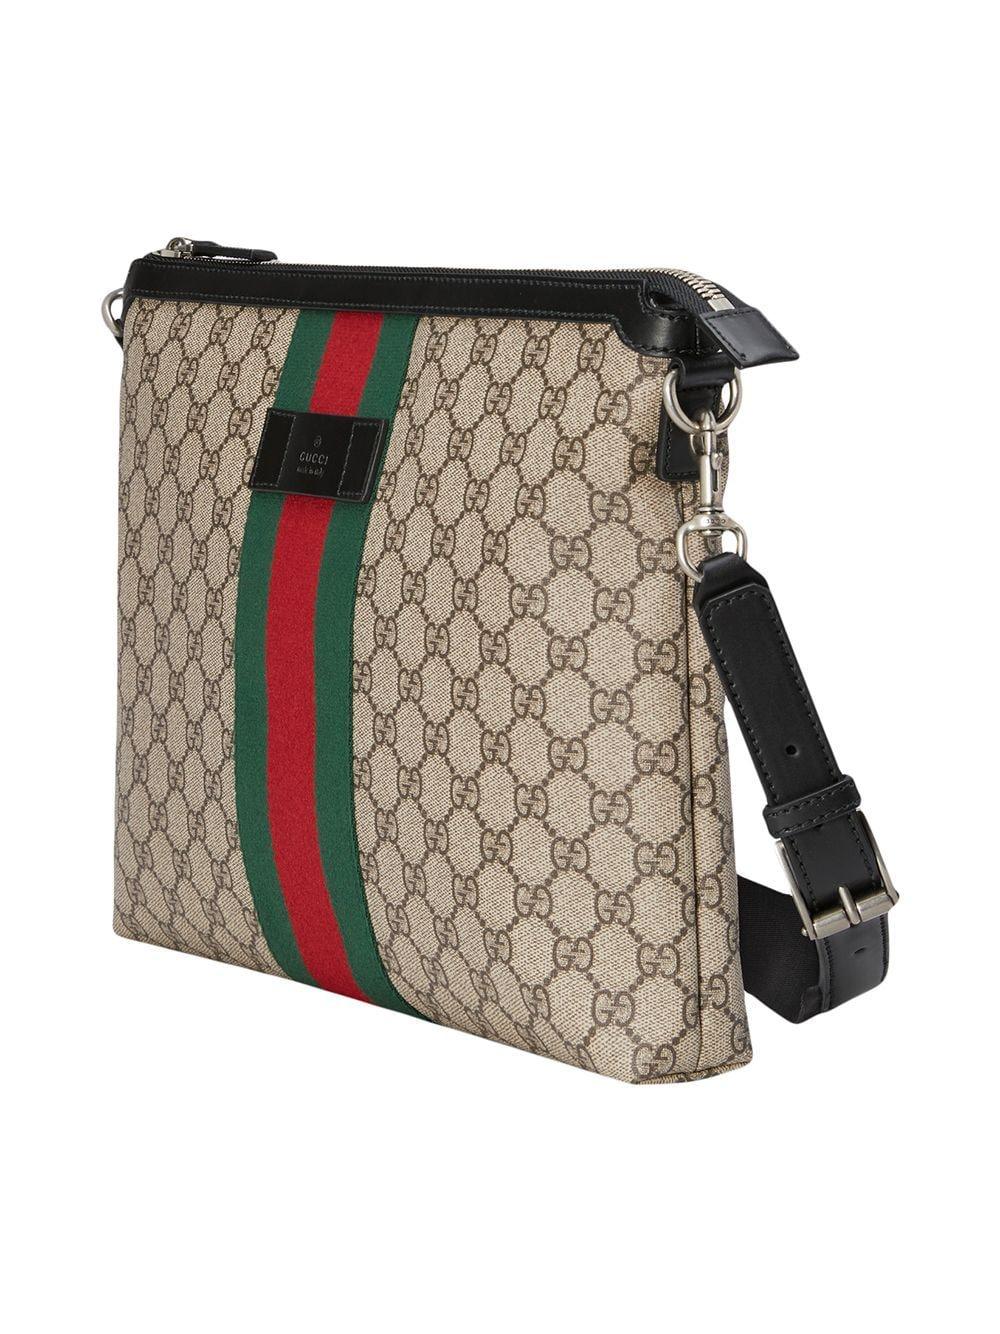 Gucci GG Supreme Medium Messenger Bag for Men